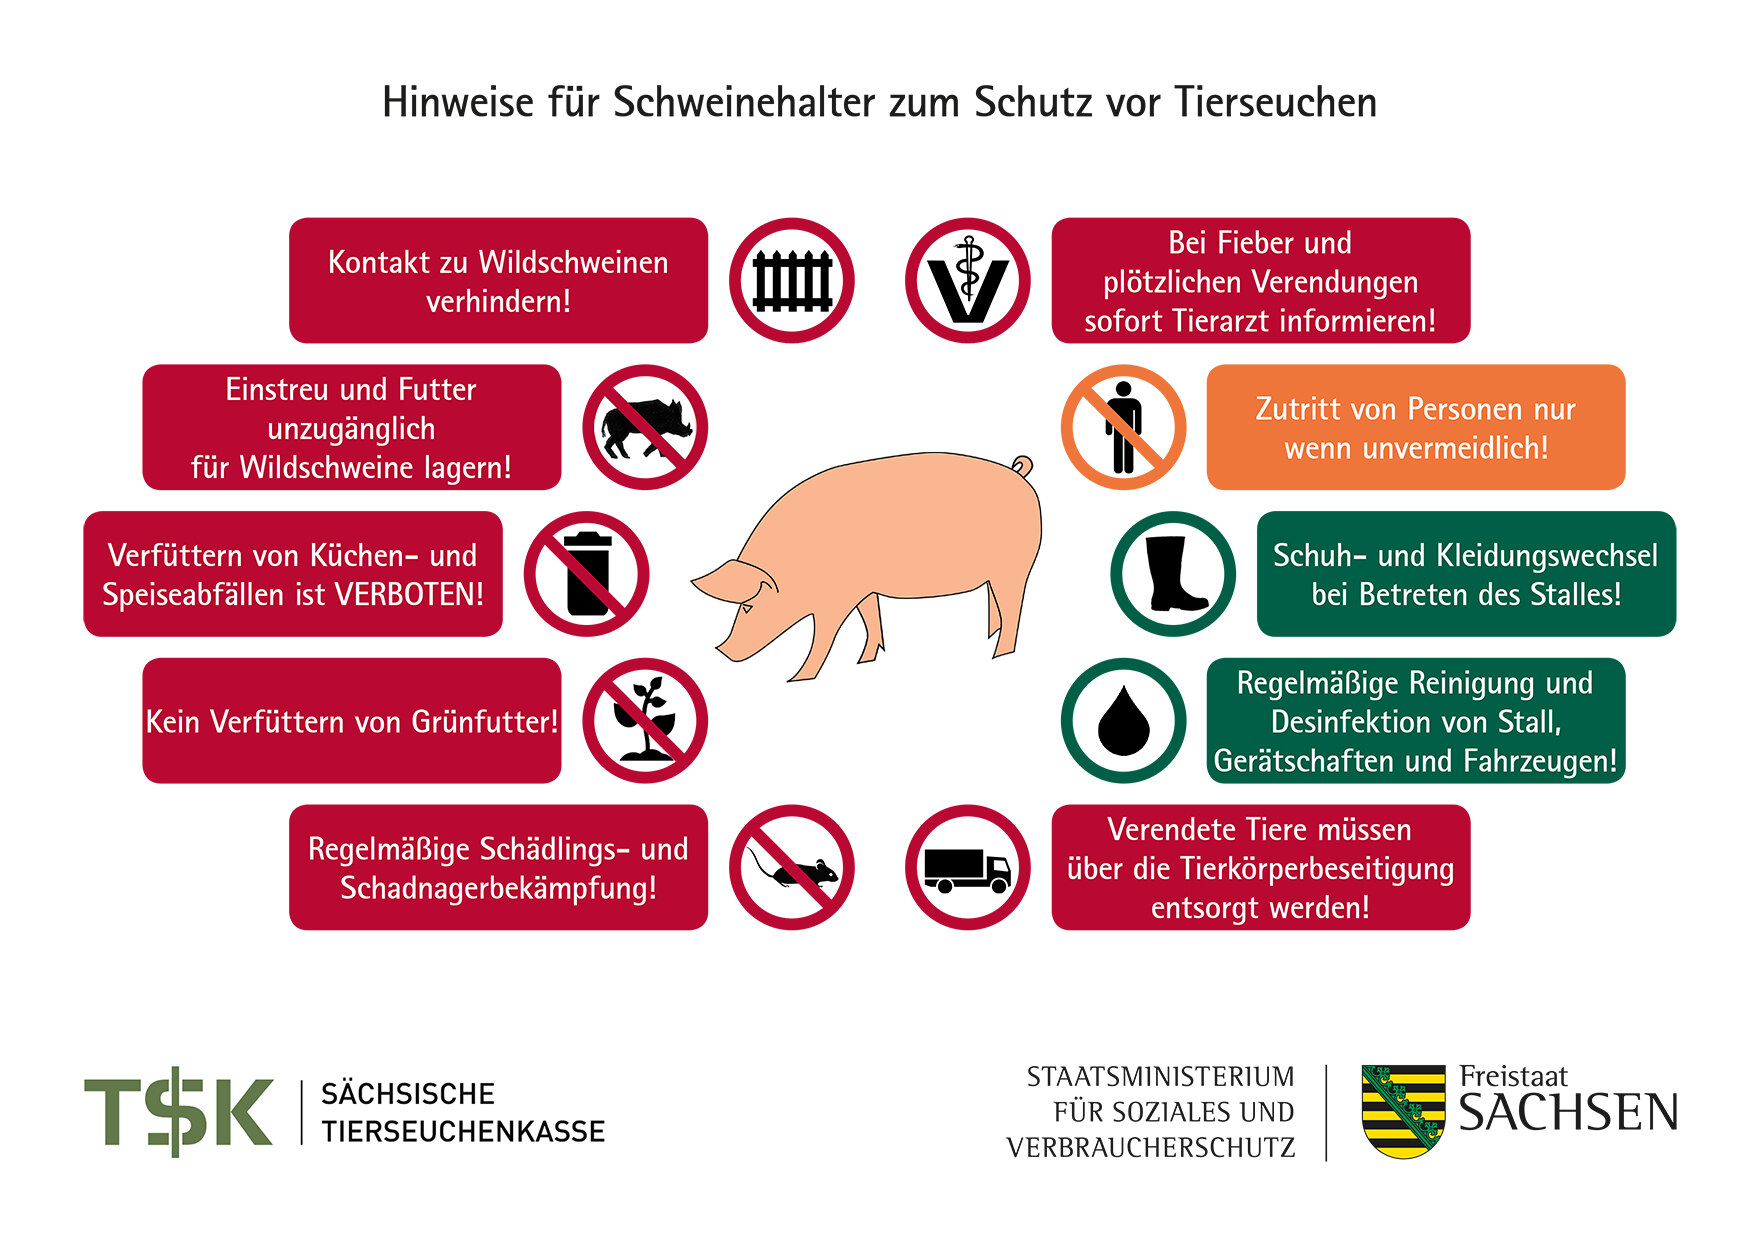 Schematische Übersicht zu Hinweisen für Schweinehalter zum Schutz vor Tierseuchen